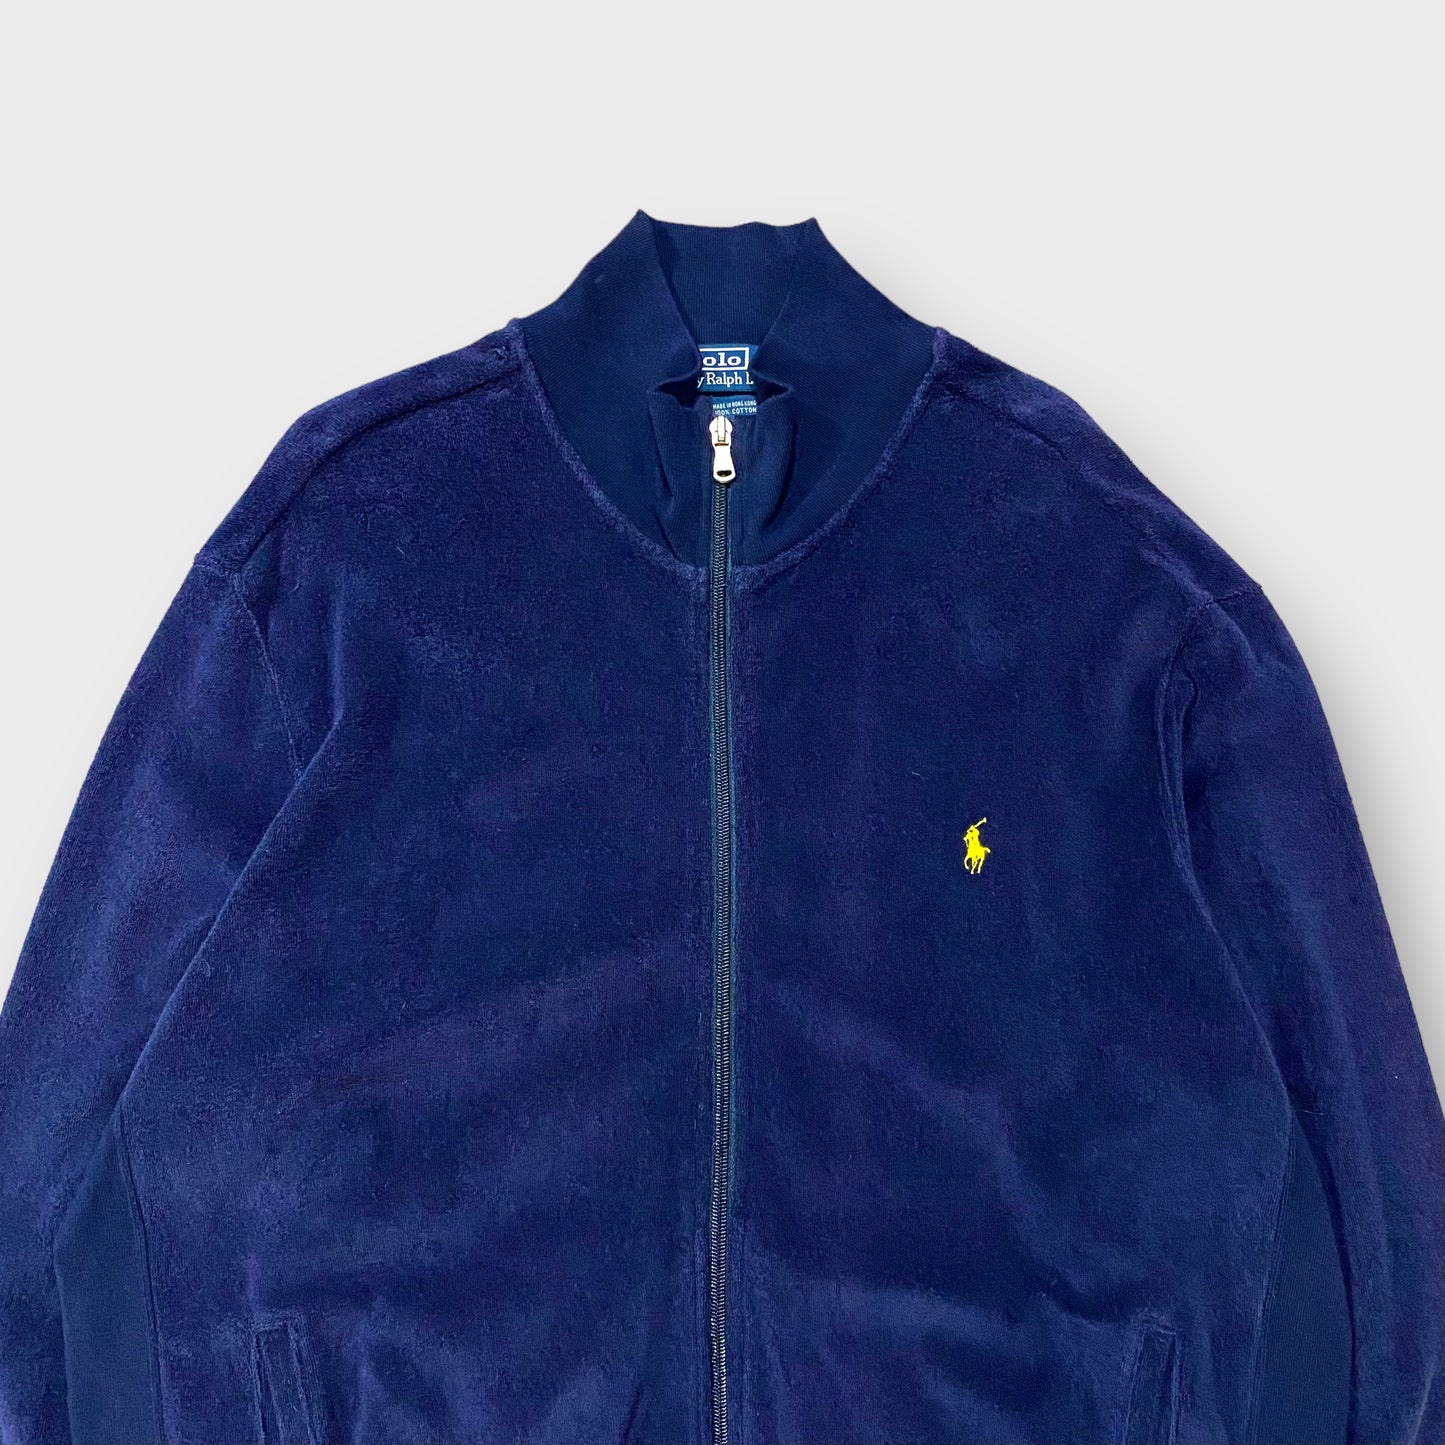 90's "Ralph Lauren" Velour track jacket